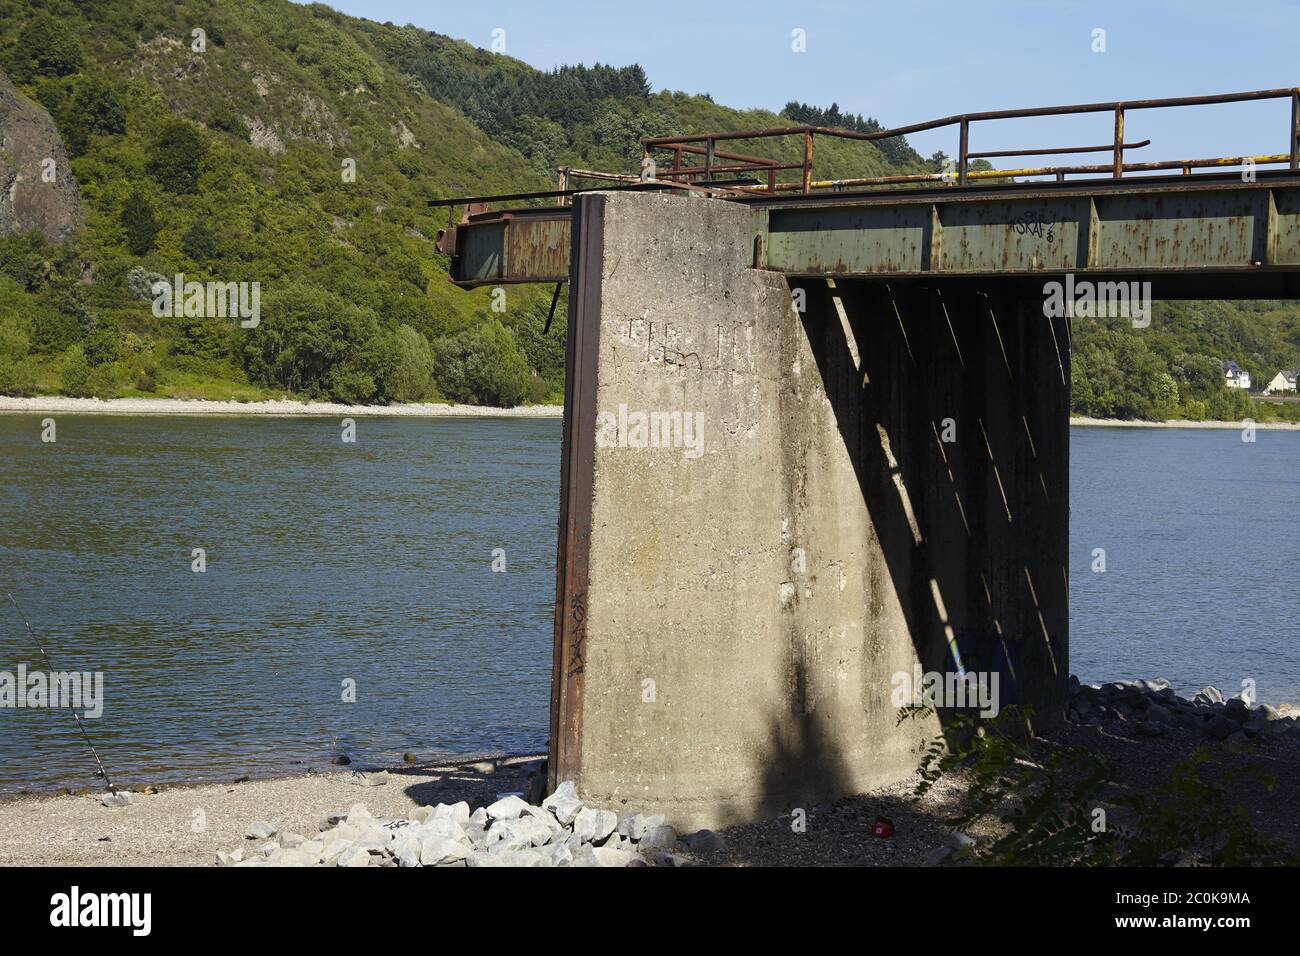 Remagen (Germany) - Bridge from Remagen Stock Photo